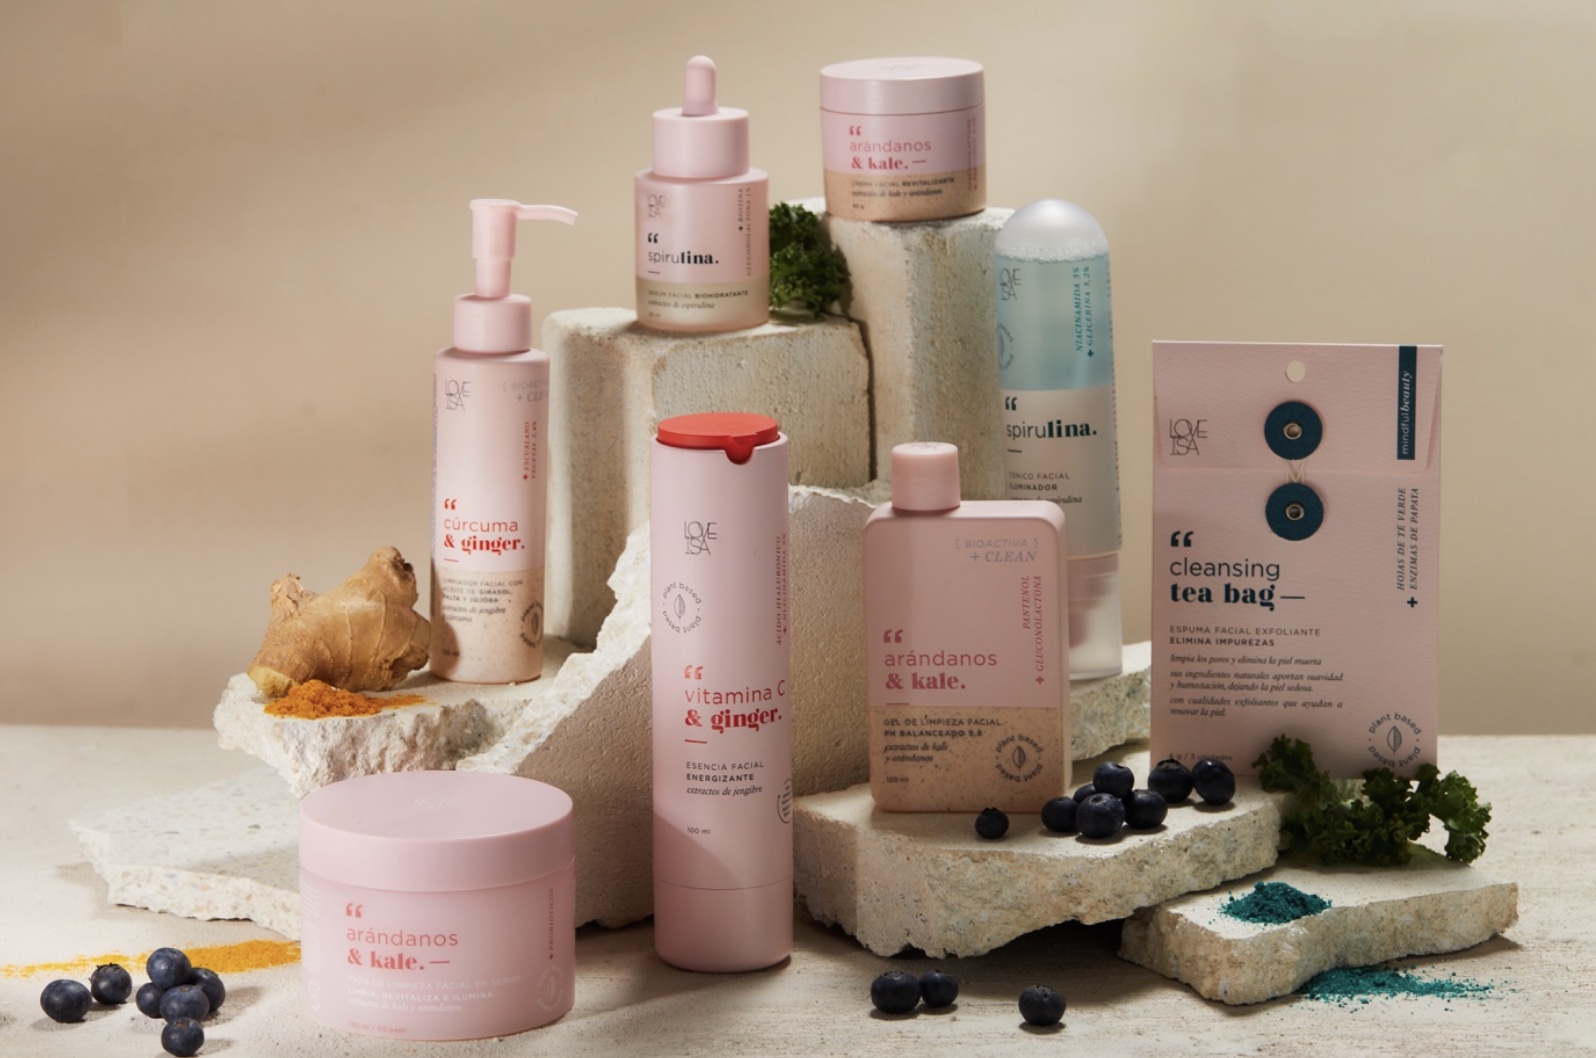 Isadora lanza nueva línea de Beauty y Skincare